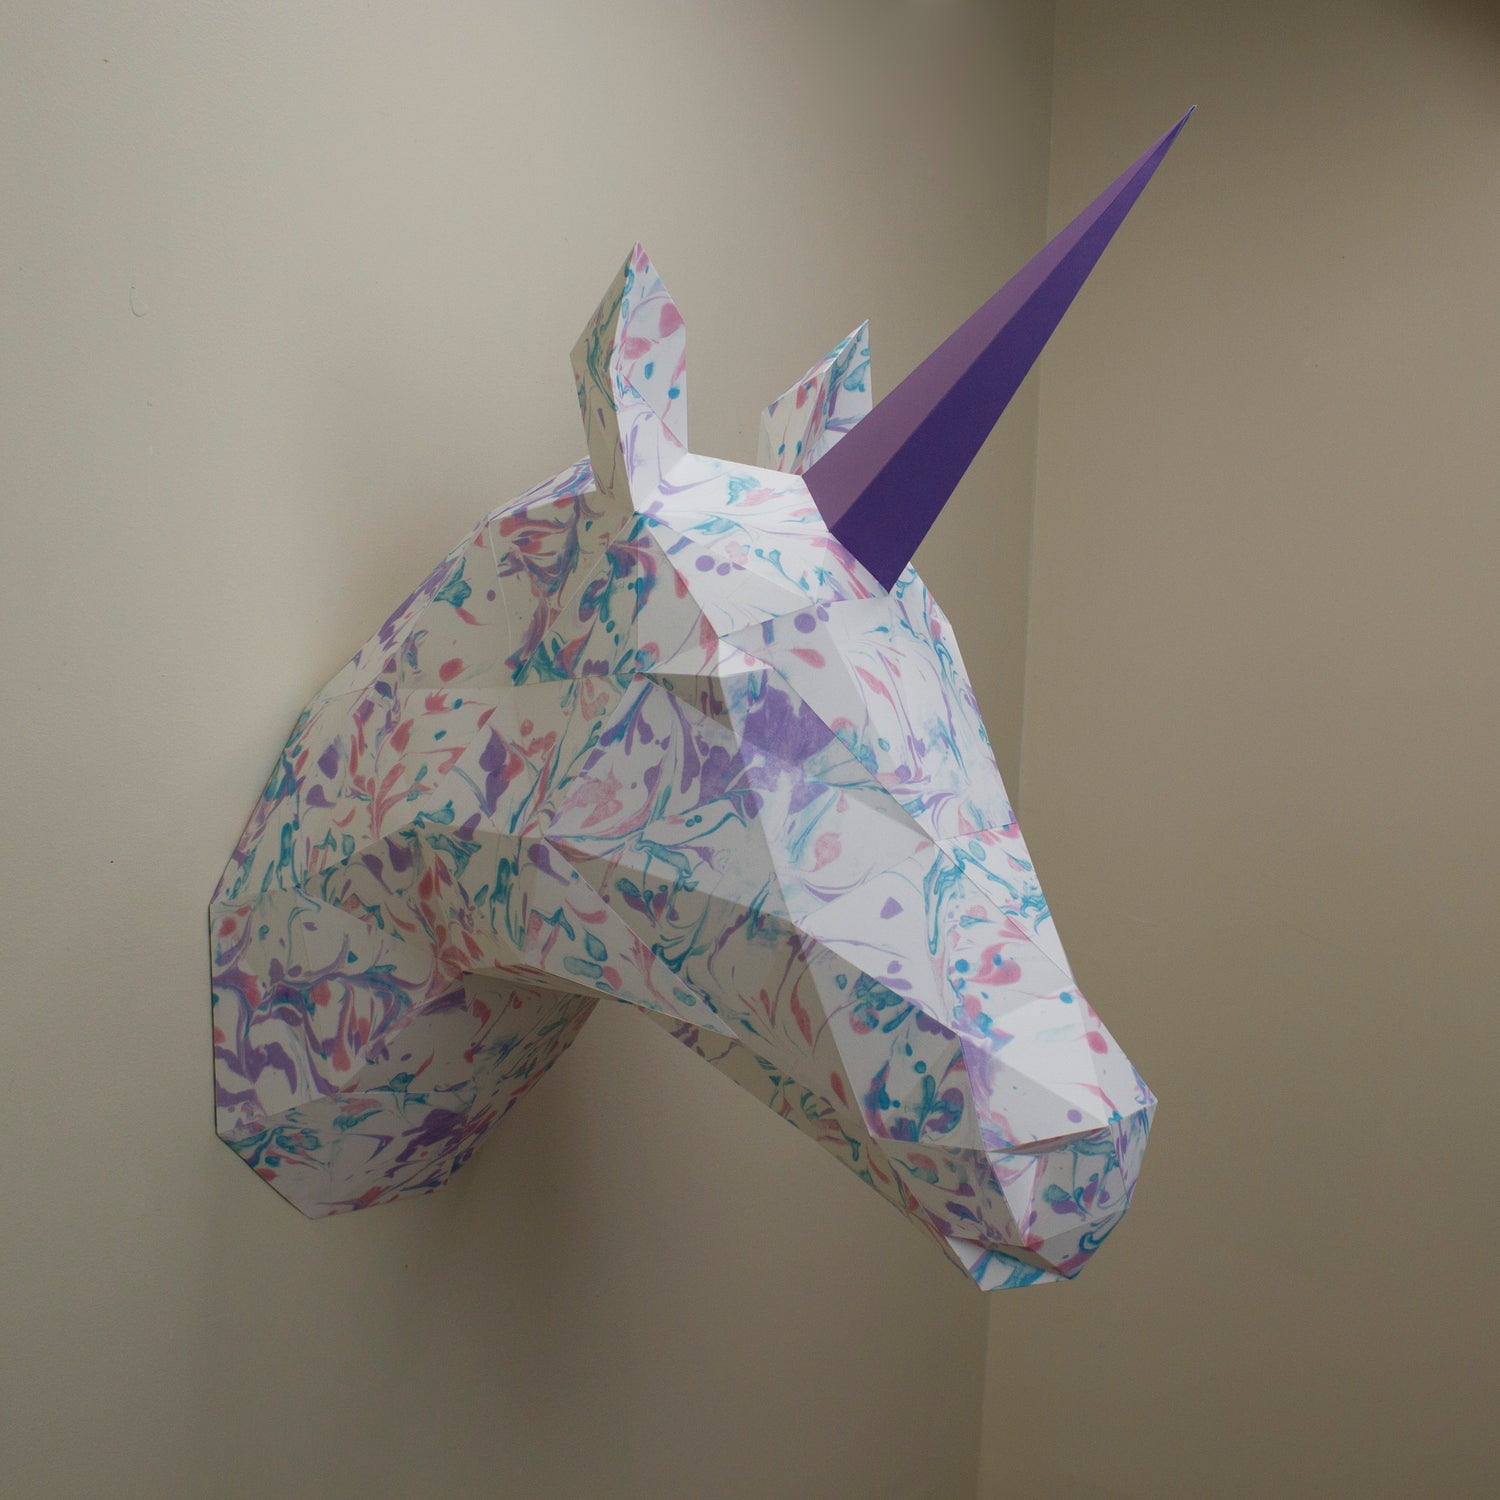 Papercraft Kit Unicorn